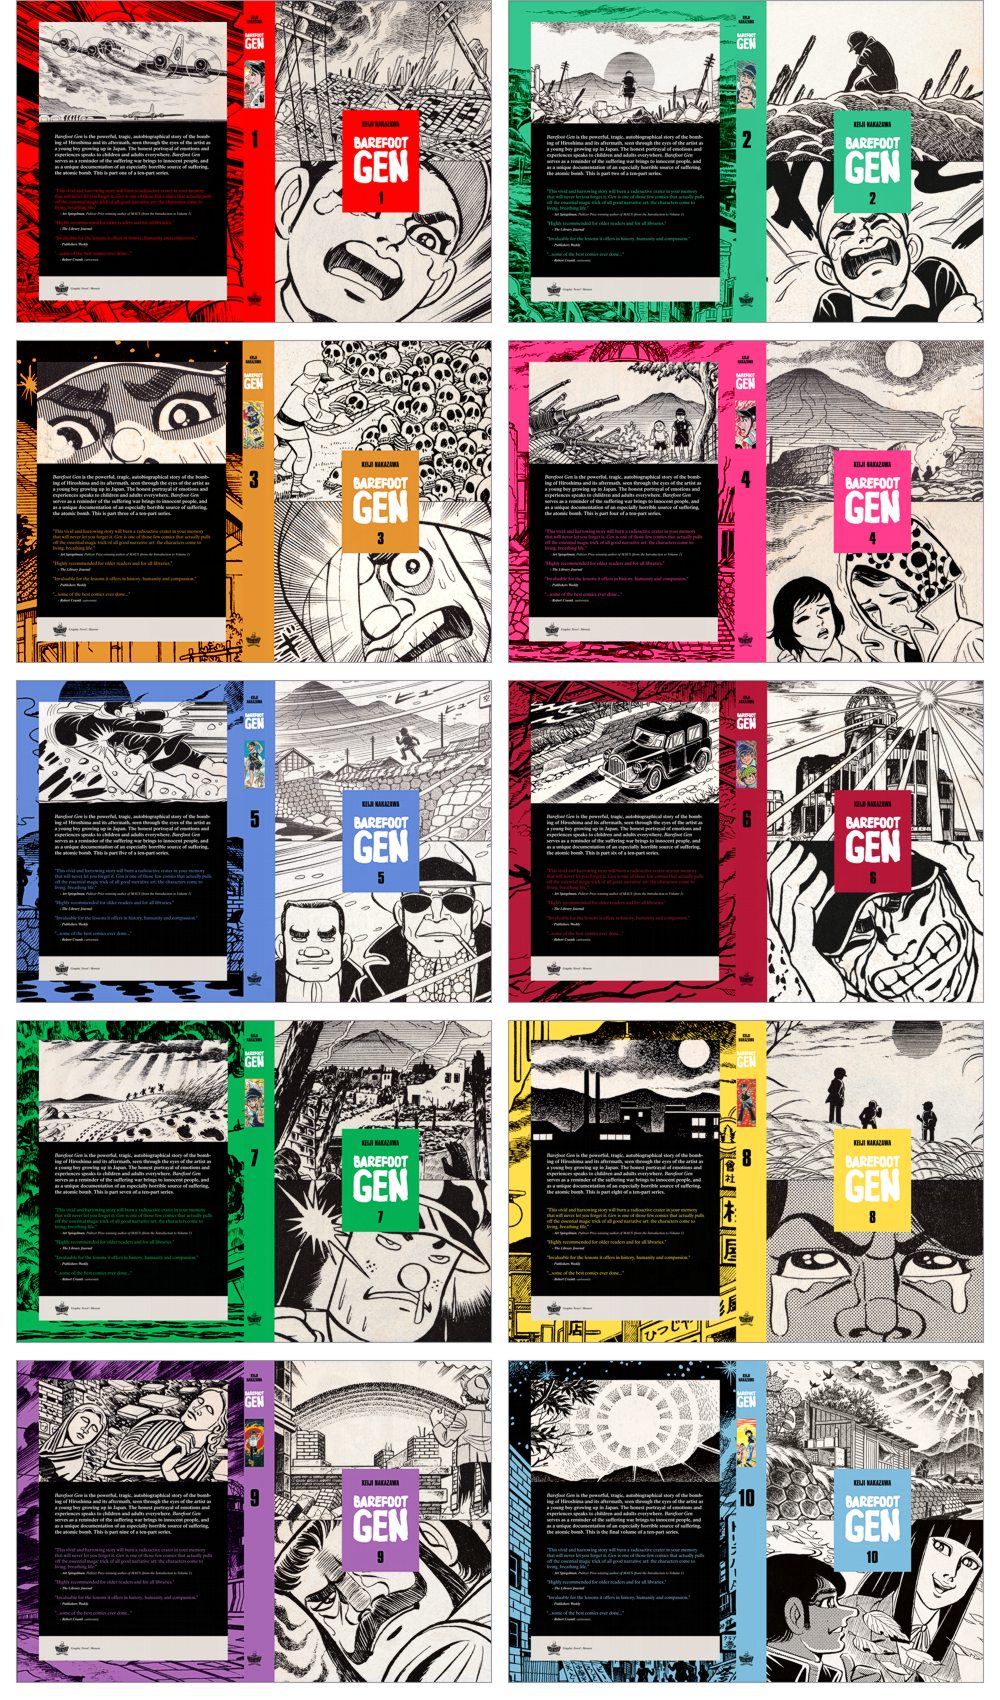 "Barefoot Gen" hardcover sleeve designs